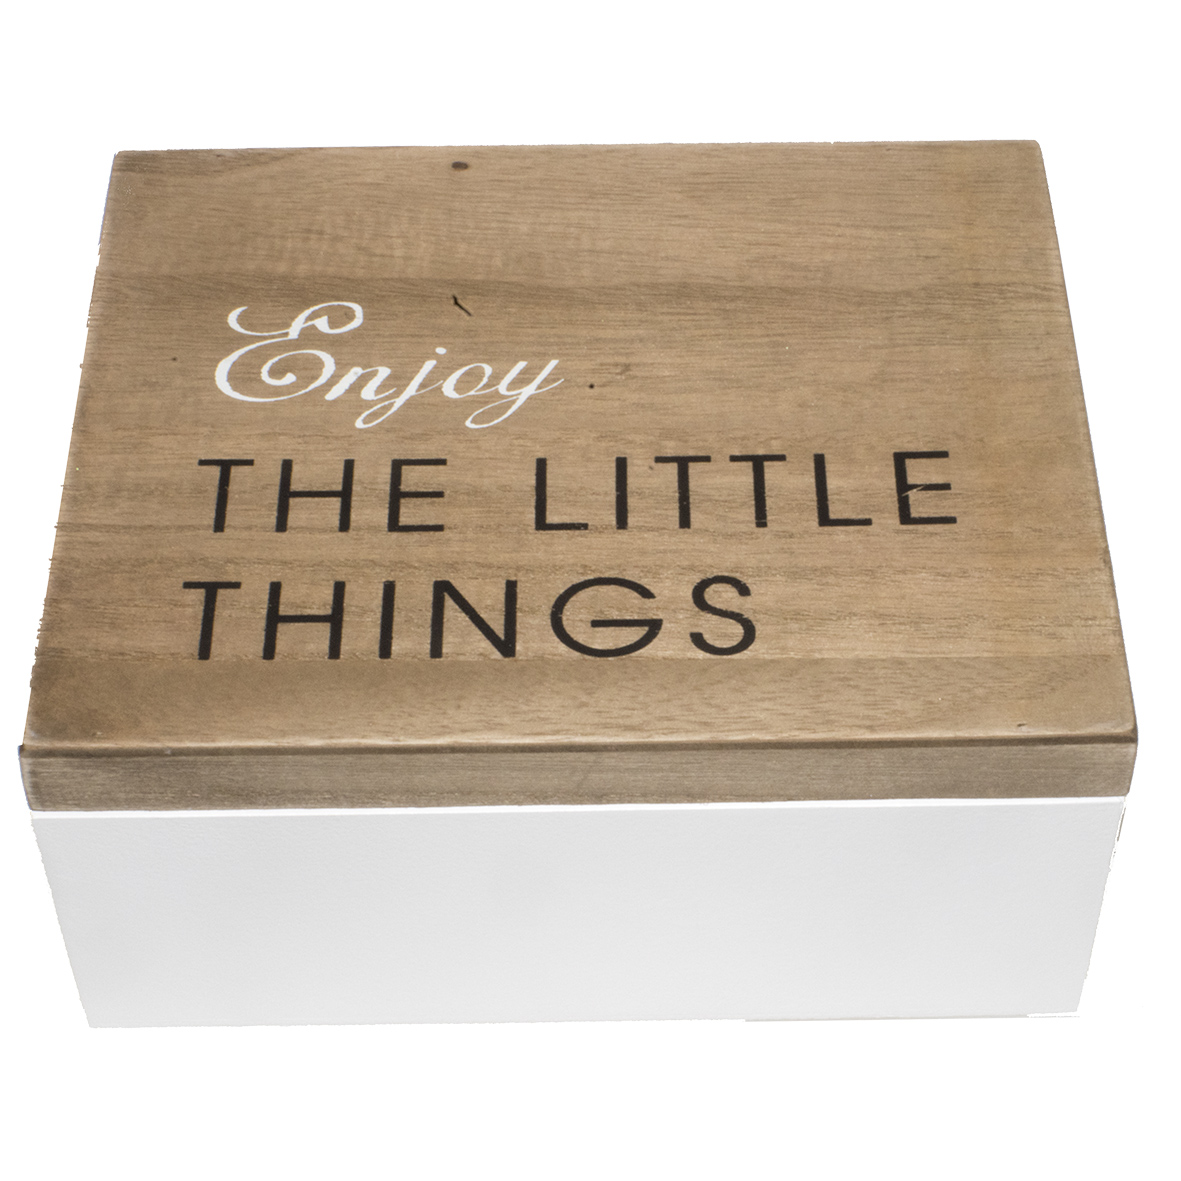 Theedoos Enjoy the Little Things - de laatste van €15.00 voor €10.00